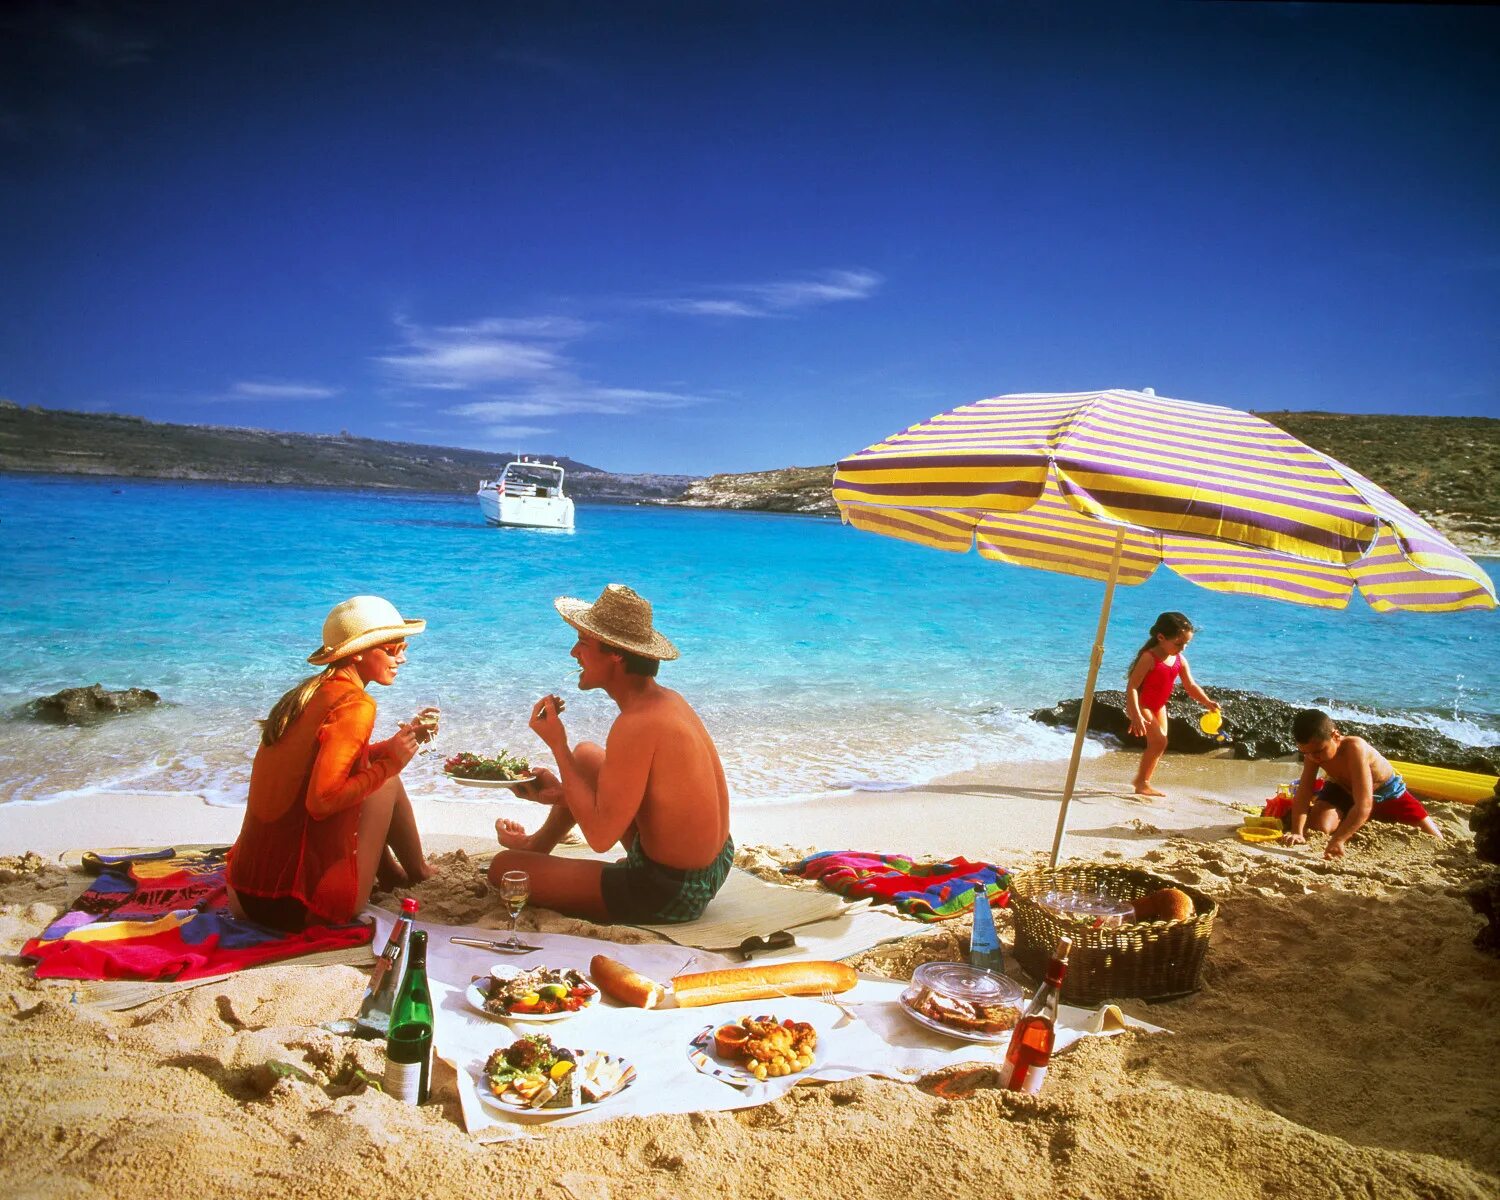 Отдыхающие в хороших странах. Туристы на пляже. Люди на пляже. Люди отдыхают на пляже. Отдыхающие на пляже.